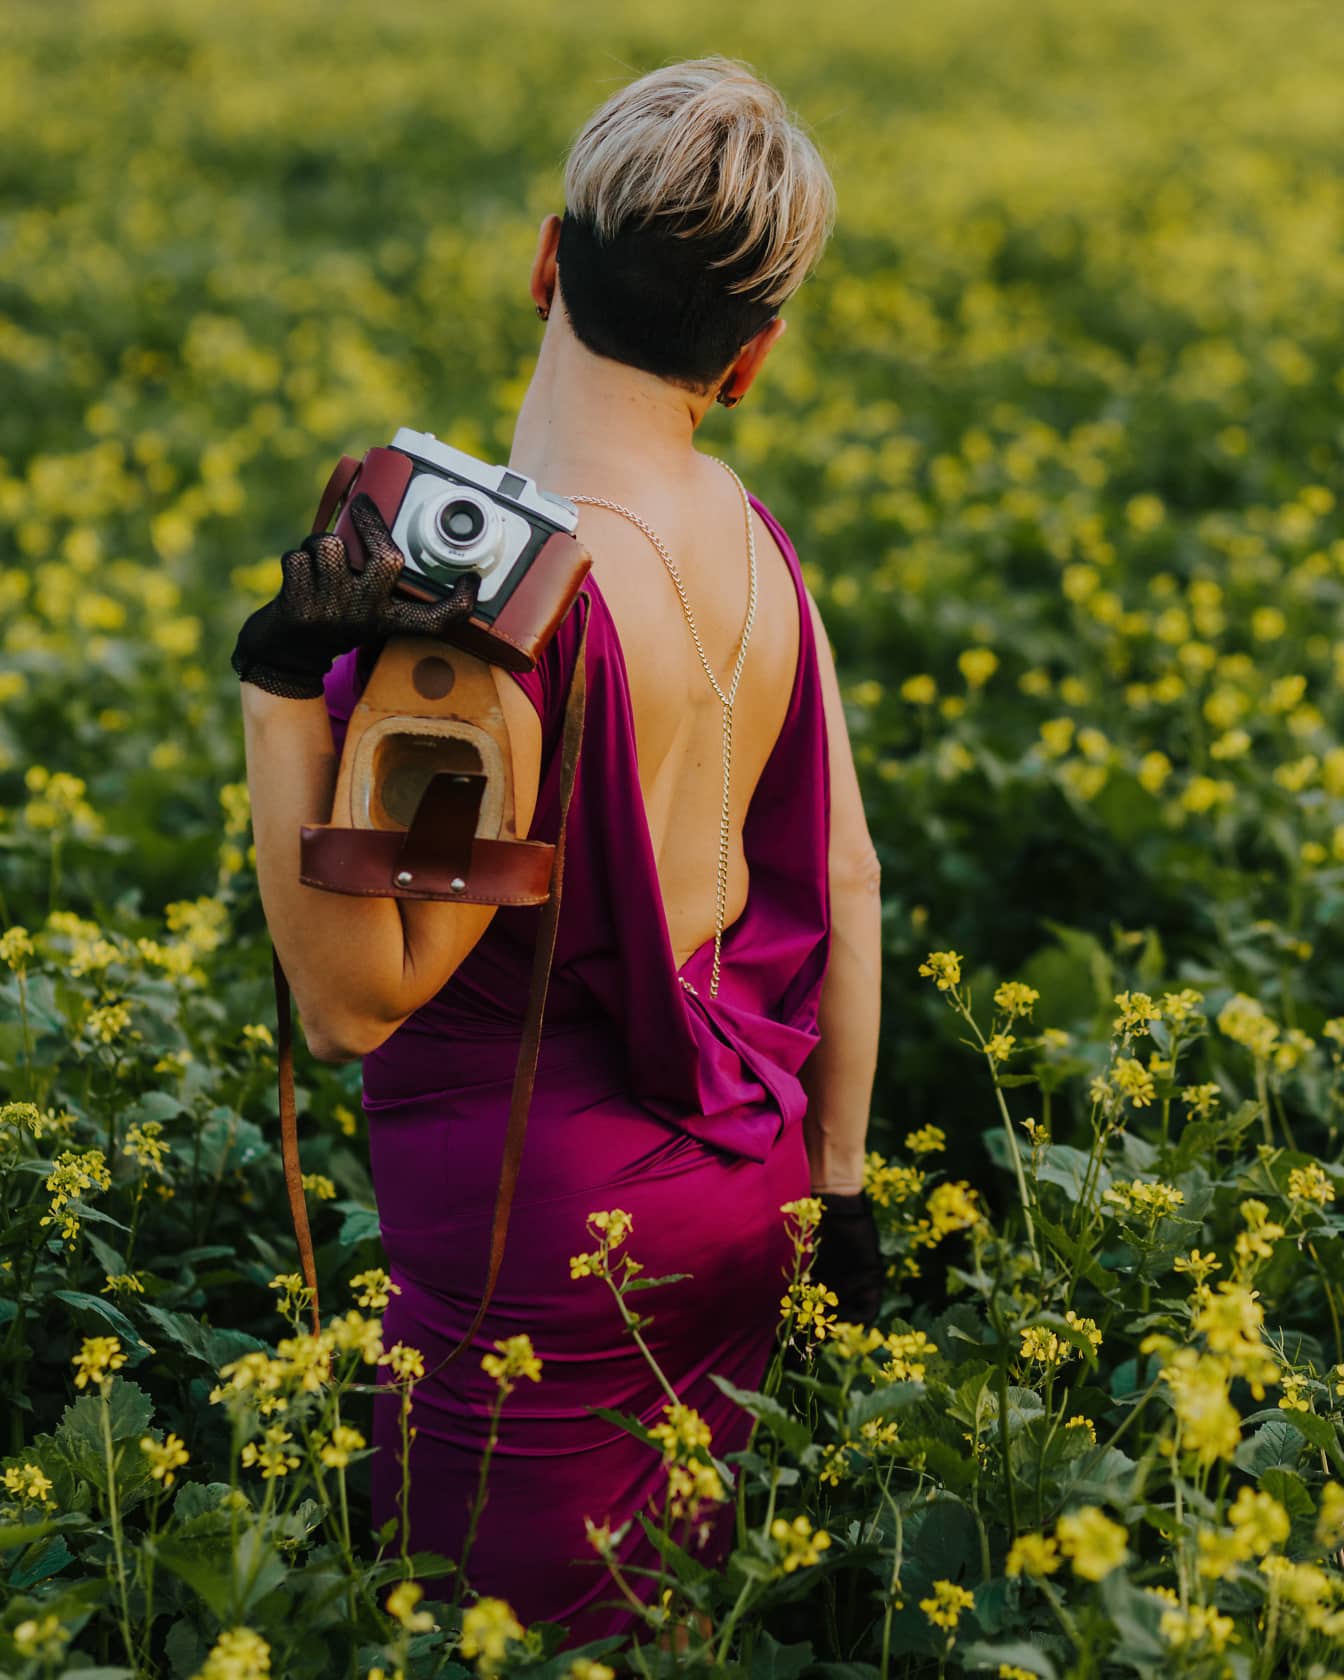 Γυναίκα με εξώπλατο φόρεμα με παλιομοδίτικη αναλογική φωτογραφική μηχανή στην πλάτη της